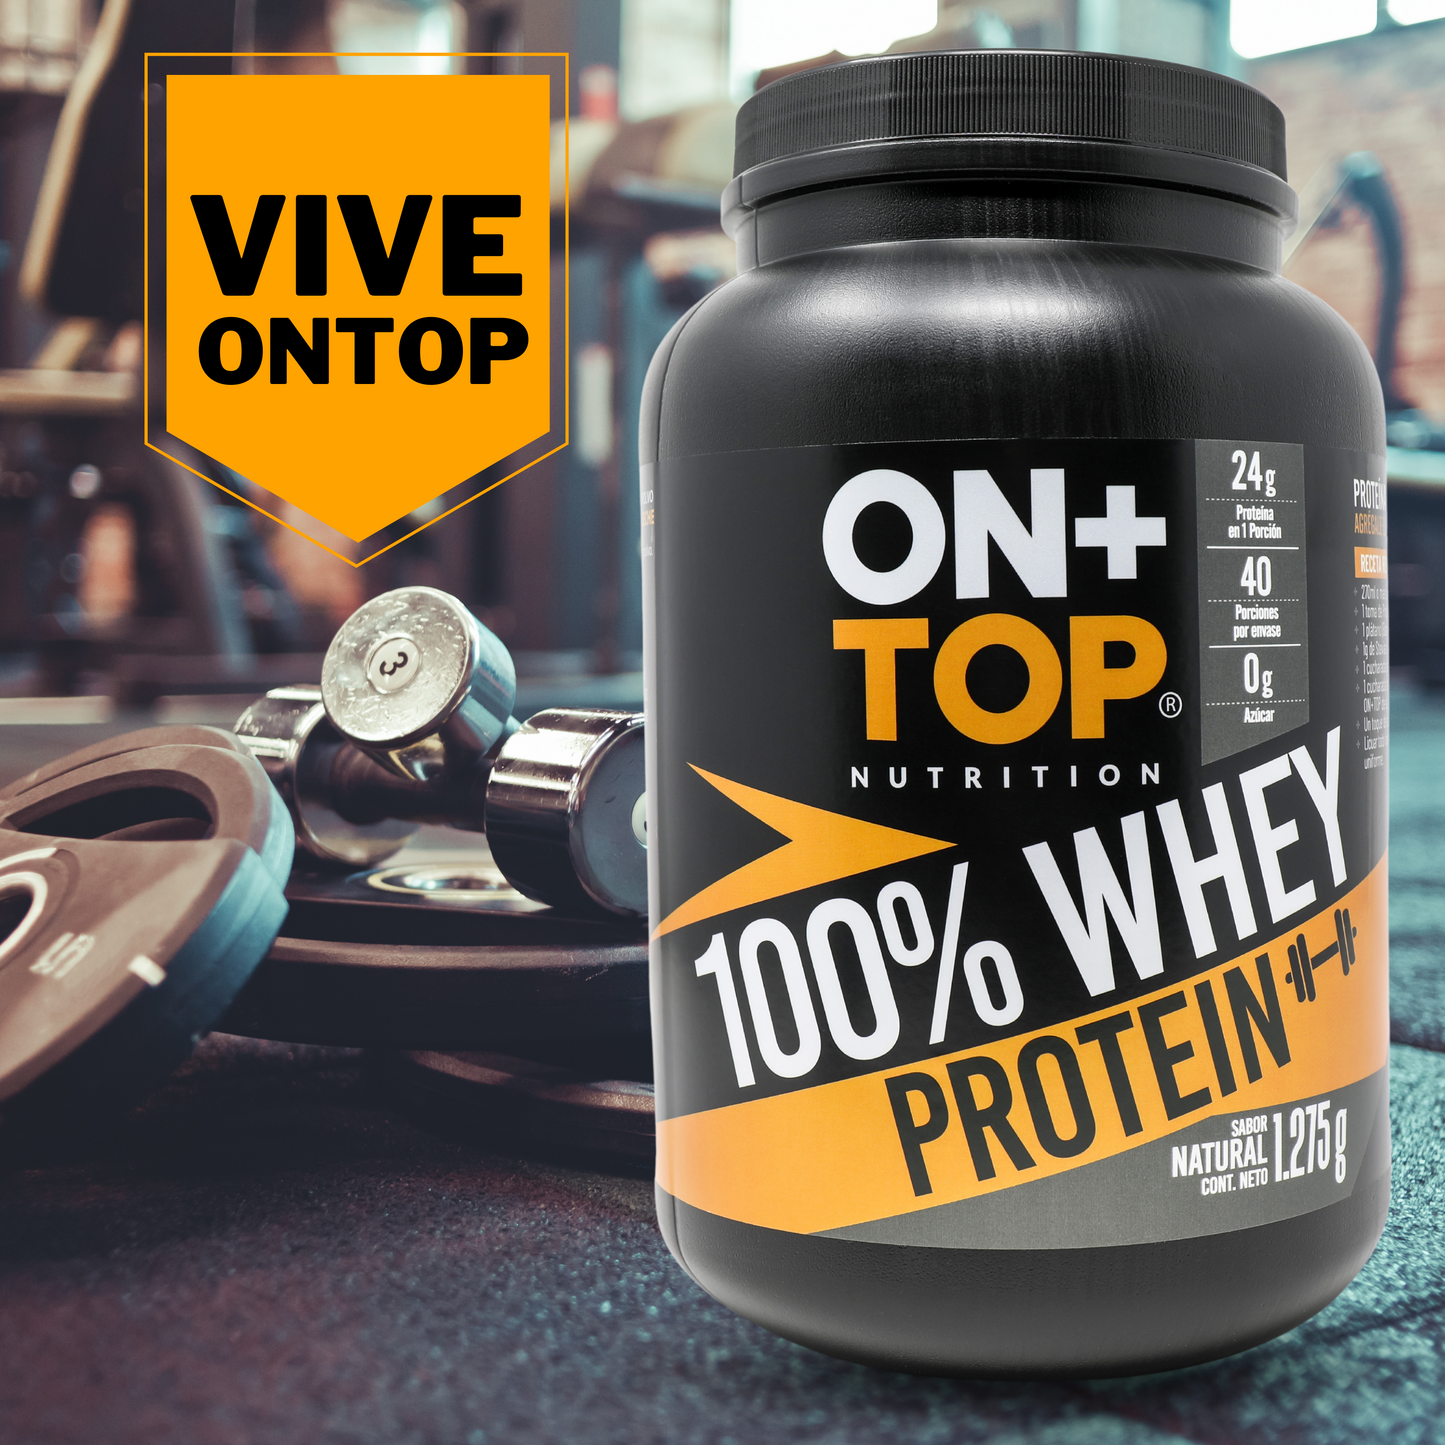 Proteína en Polvo 100% Whey Protein sabor Natural 1.275g.